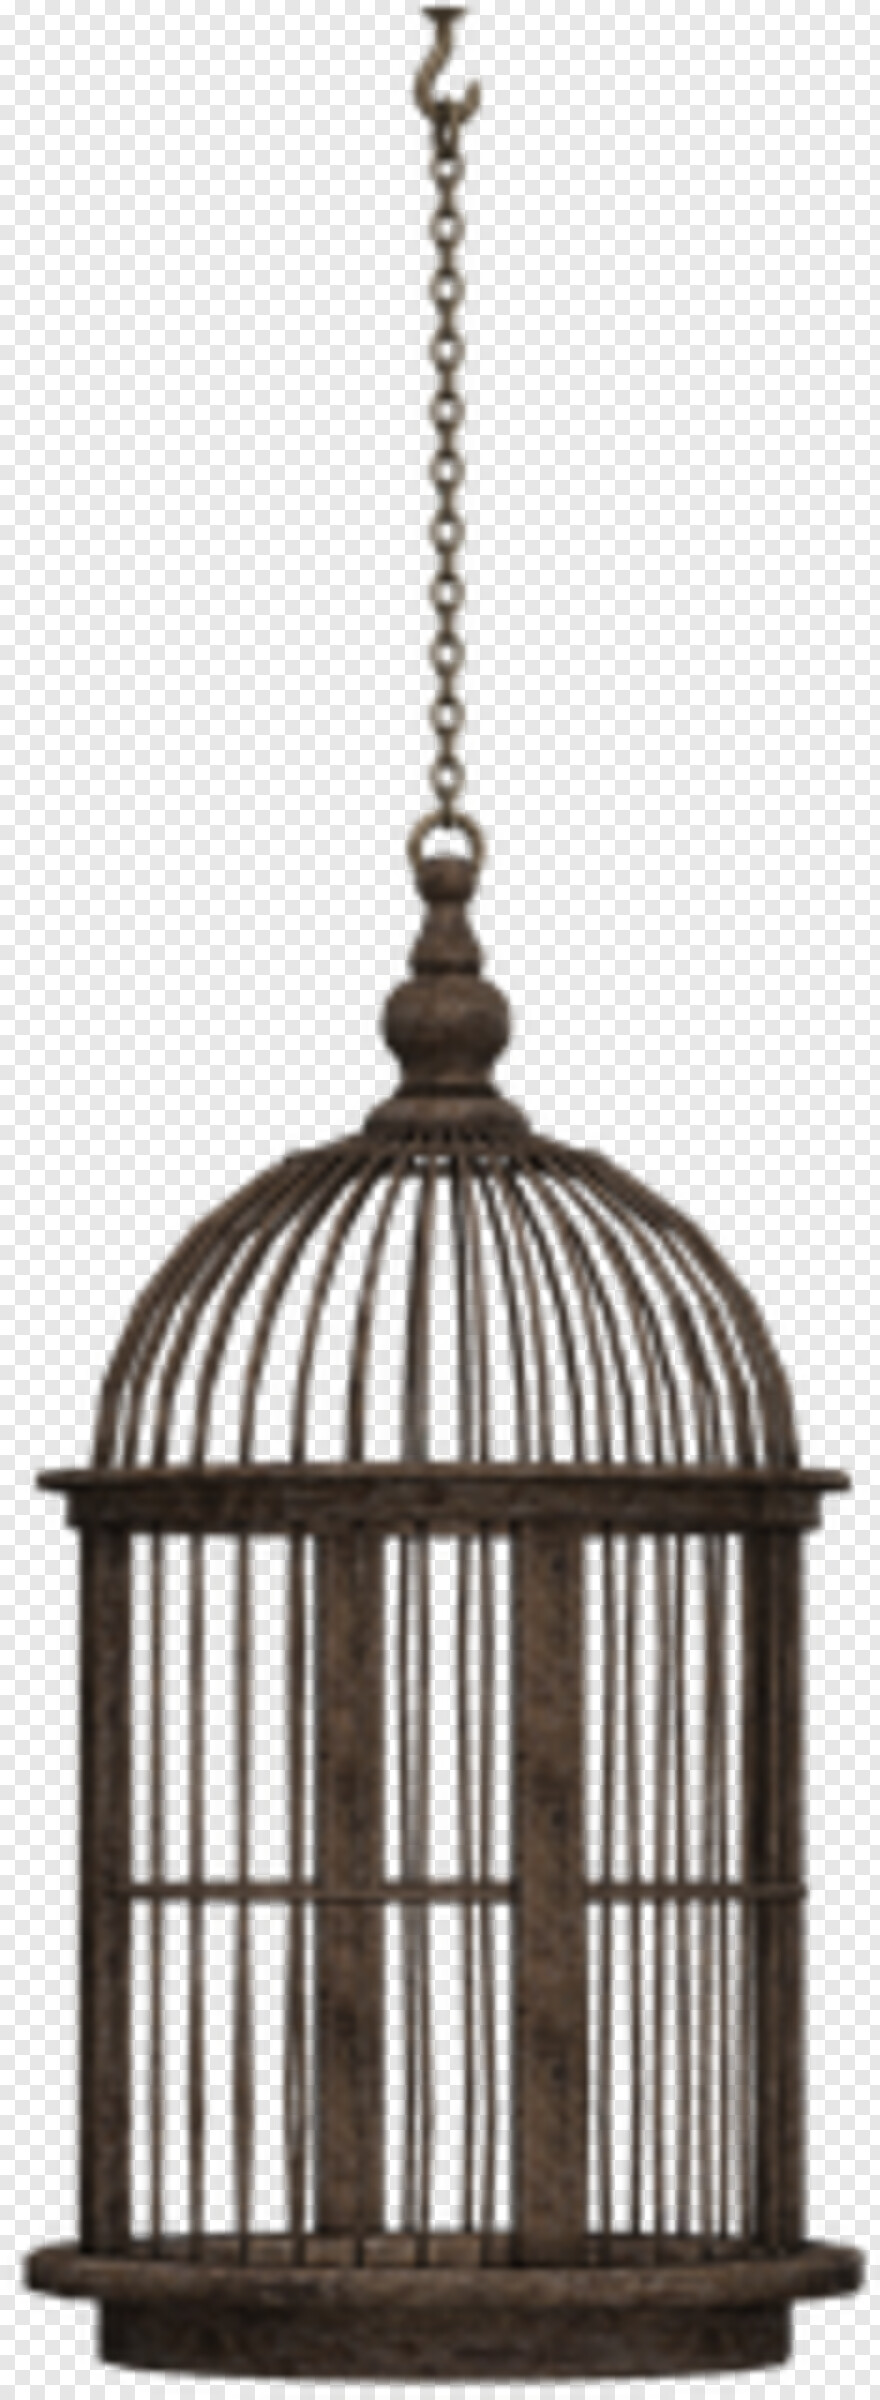 nicolas-cage # 360023